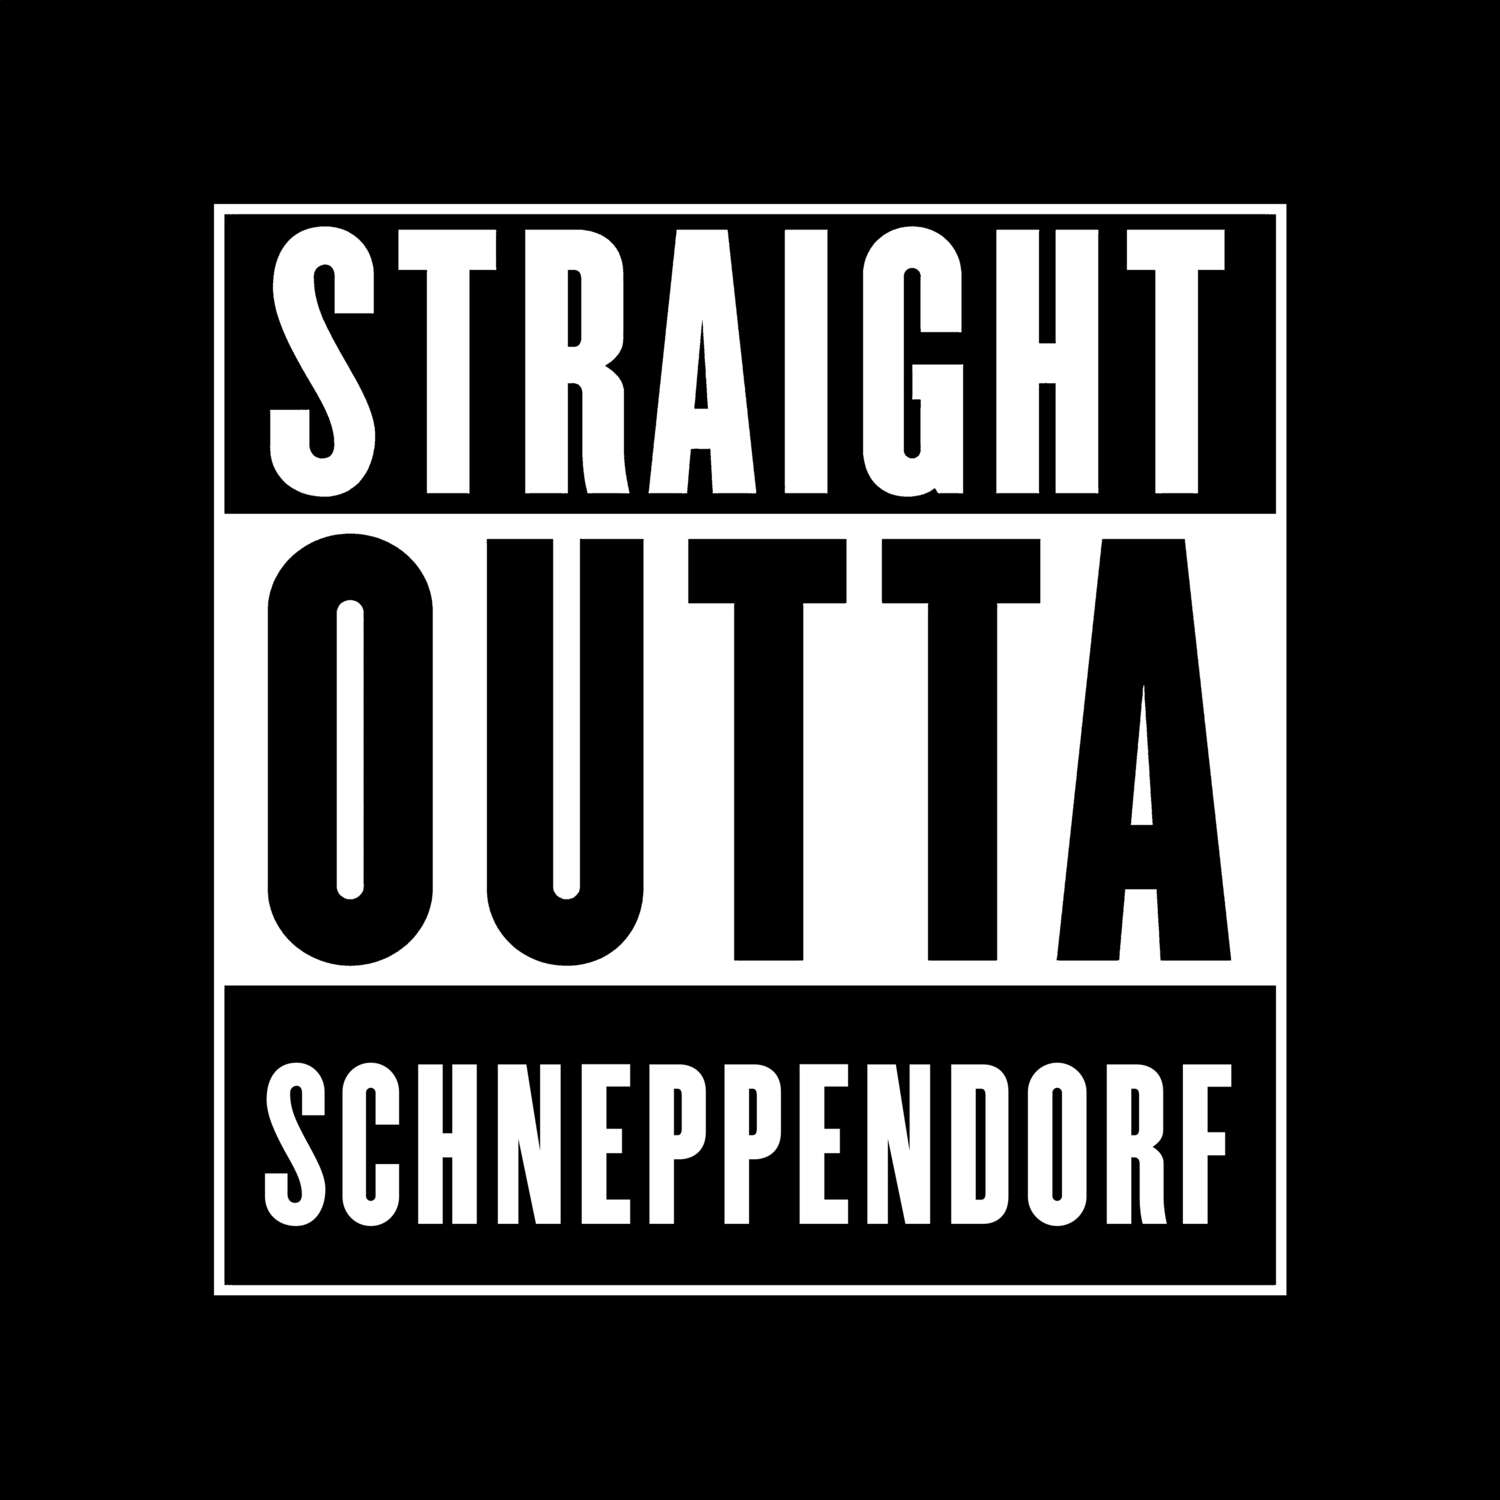 Schneppendorf T-Shirt »Straight Outta«